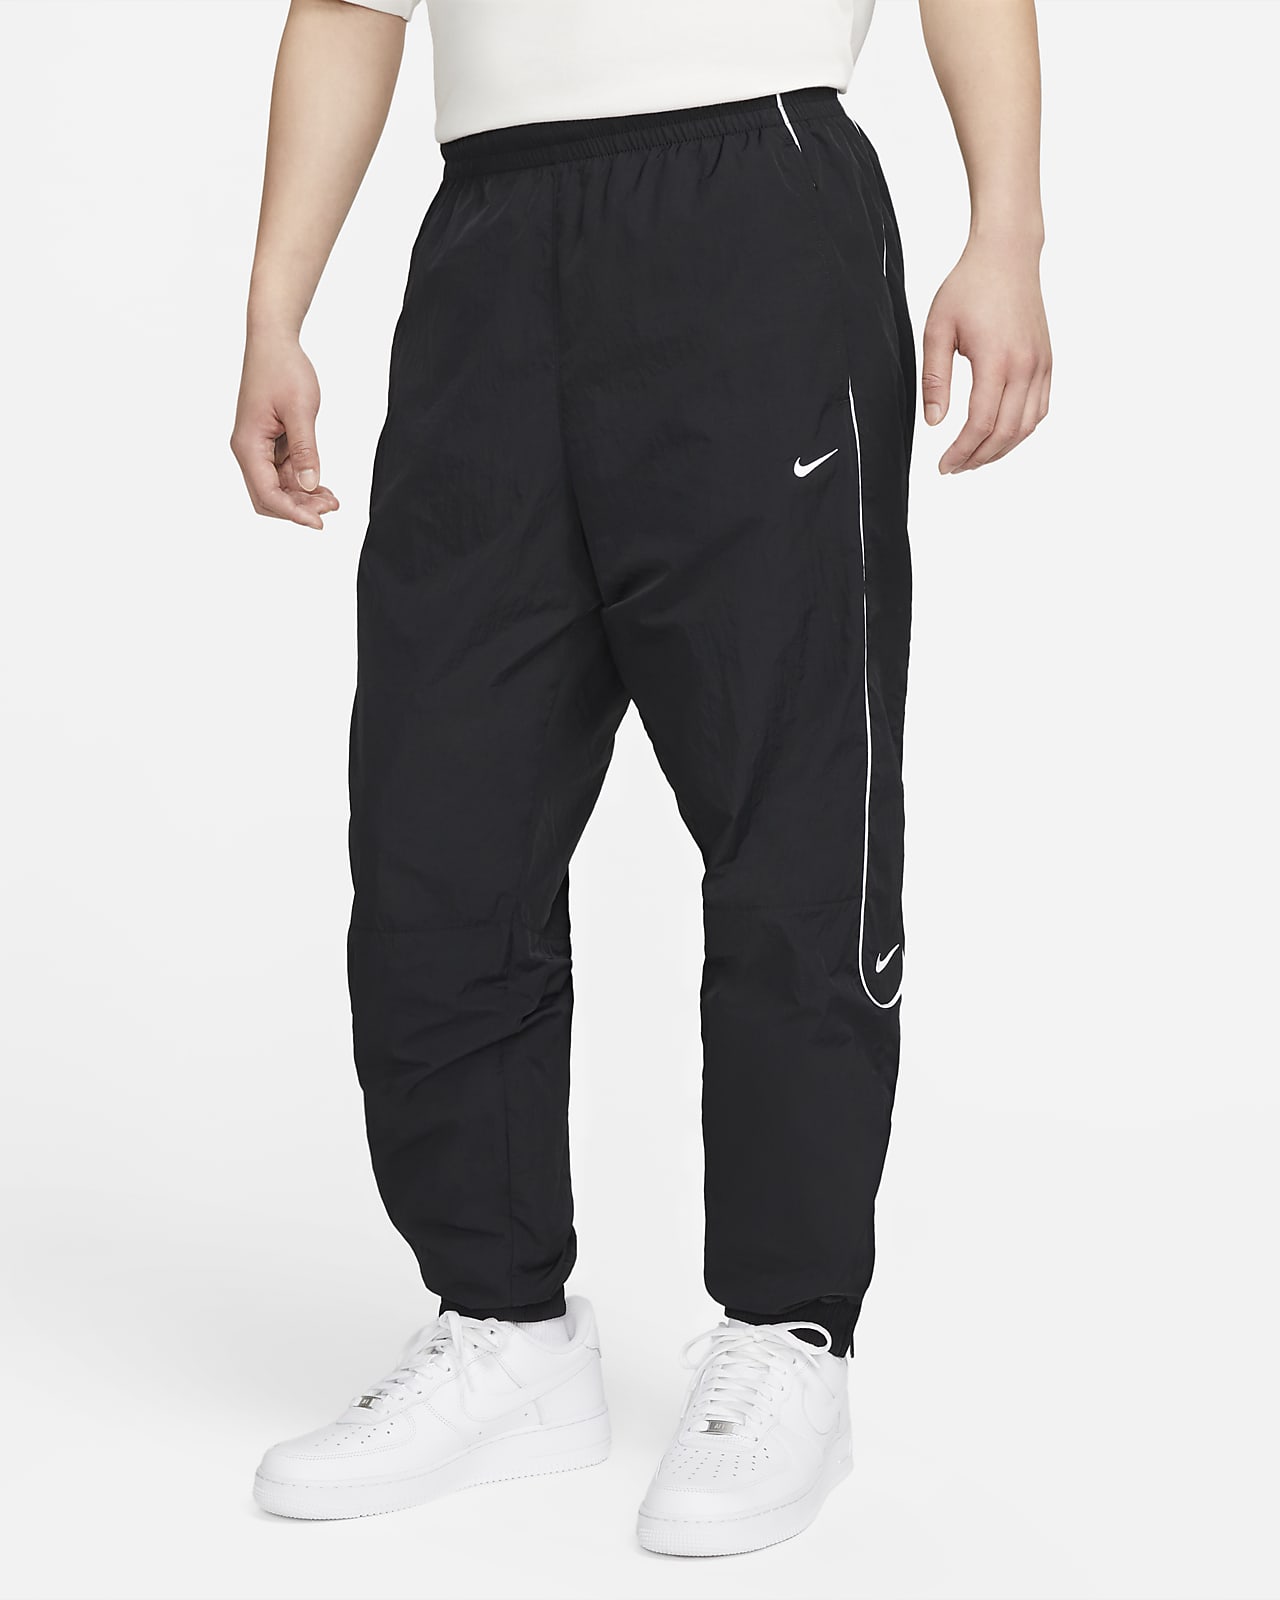 กางเกงวอร์มขายาวผู้ชาย Nike Solo Swoosh